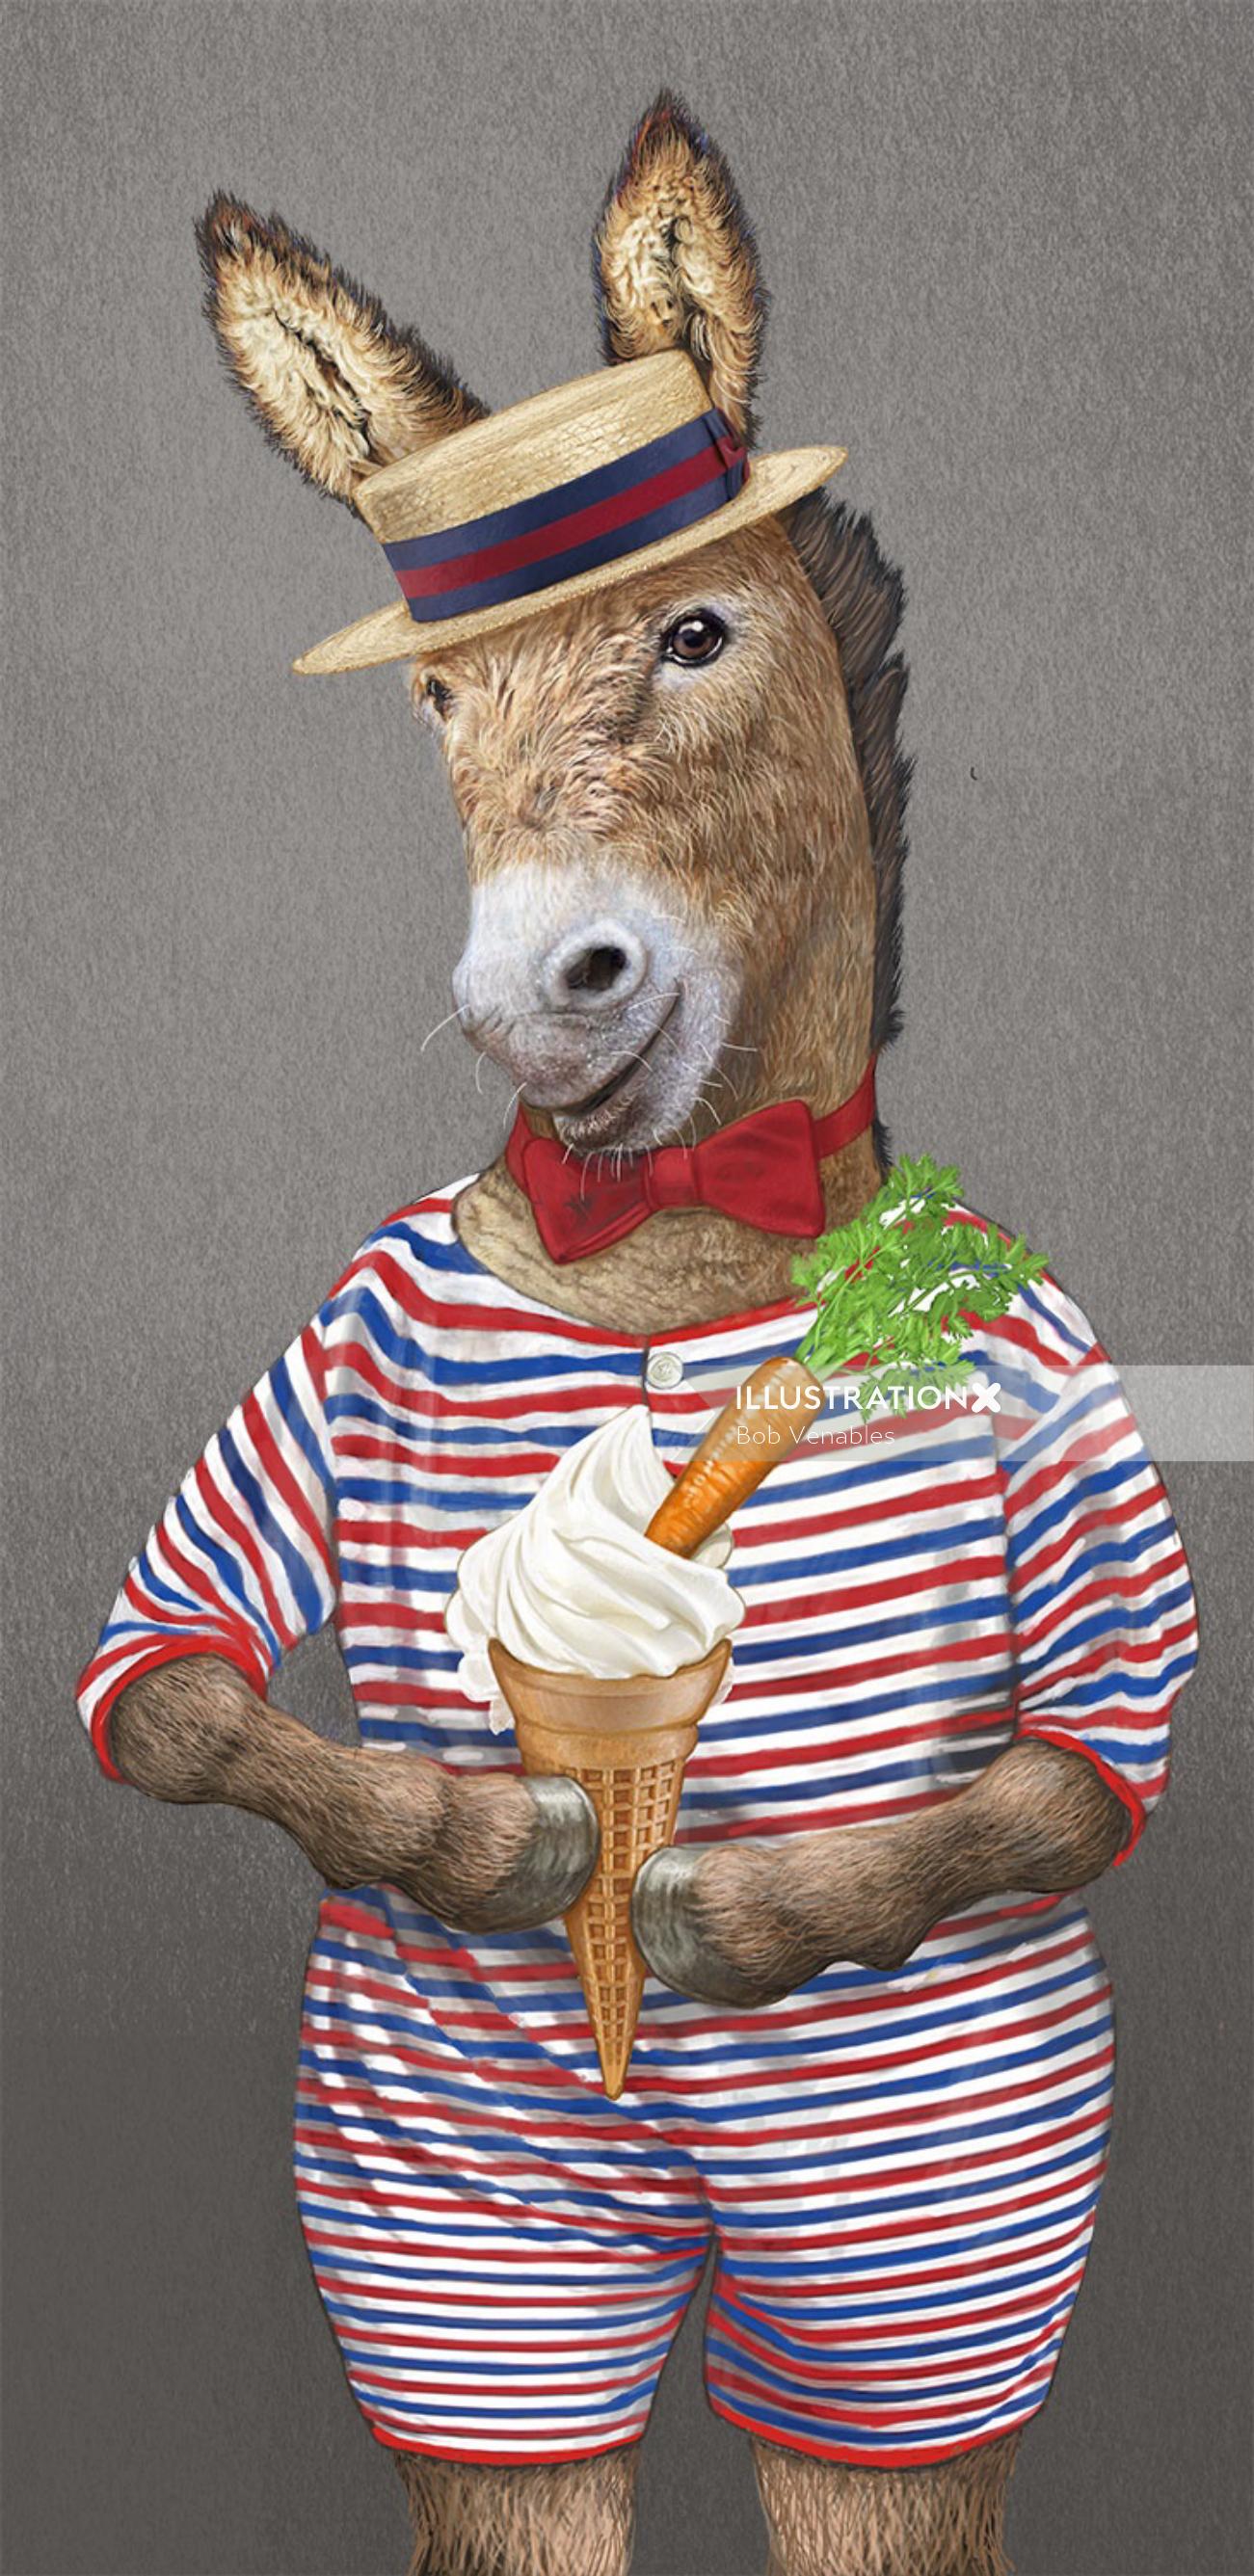 Cheval anthropomorphe avec illustration de crème glacée par Bob Venables